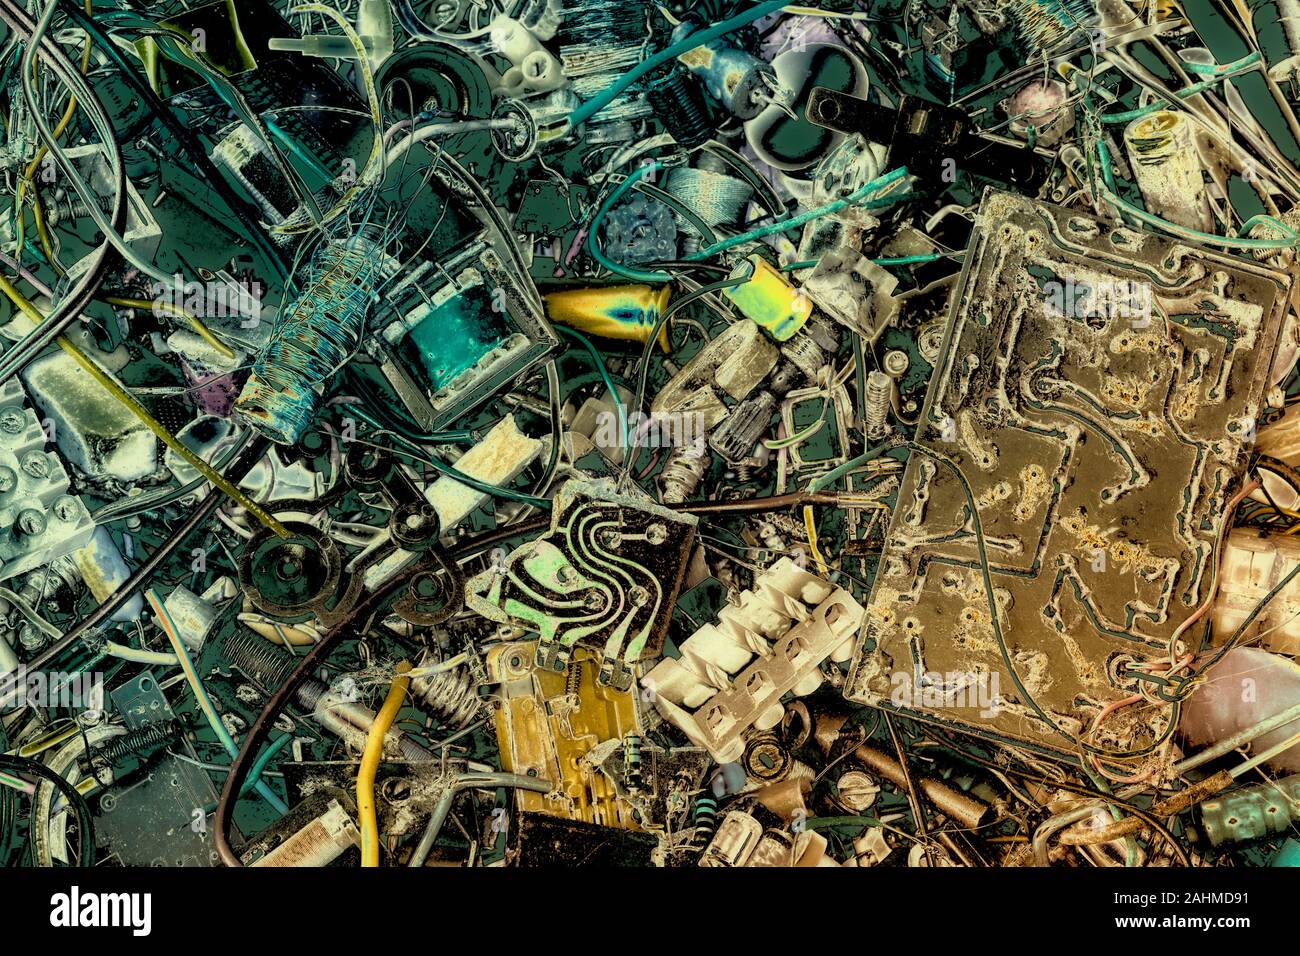 electronic waste Stock Photo